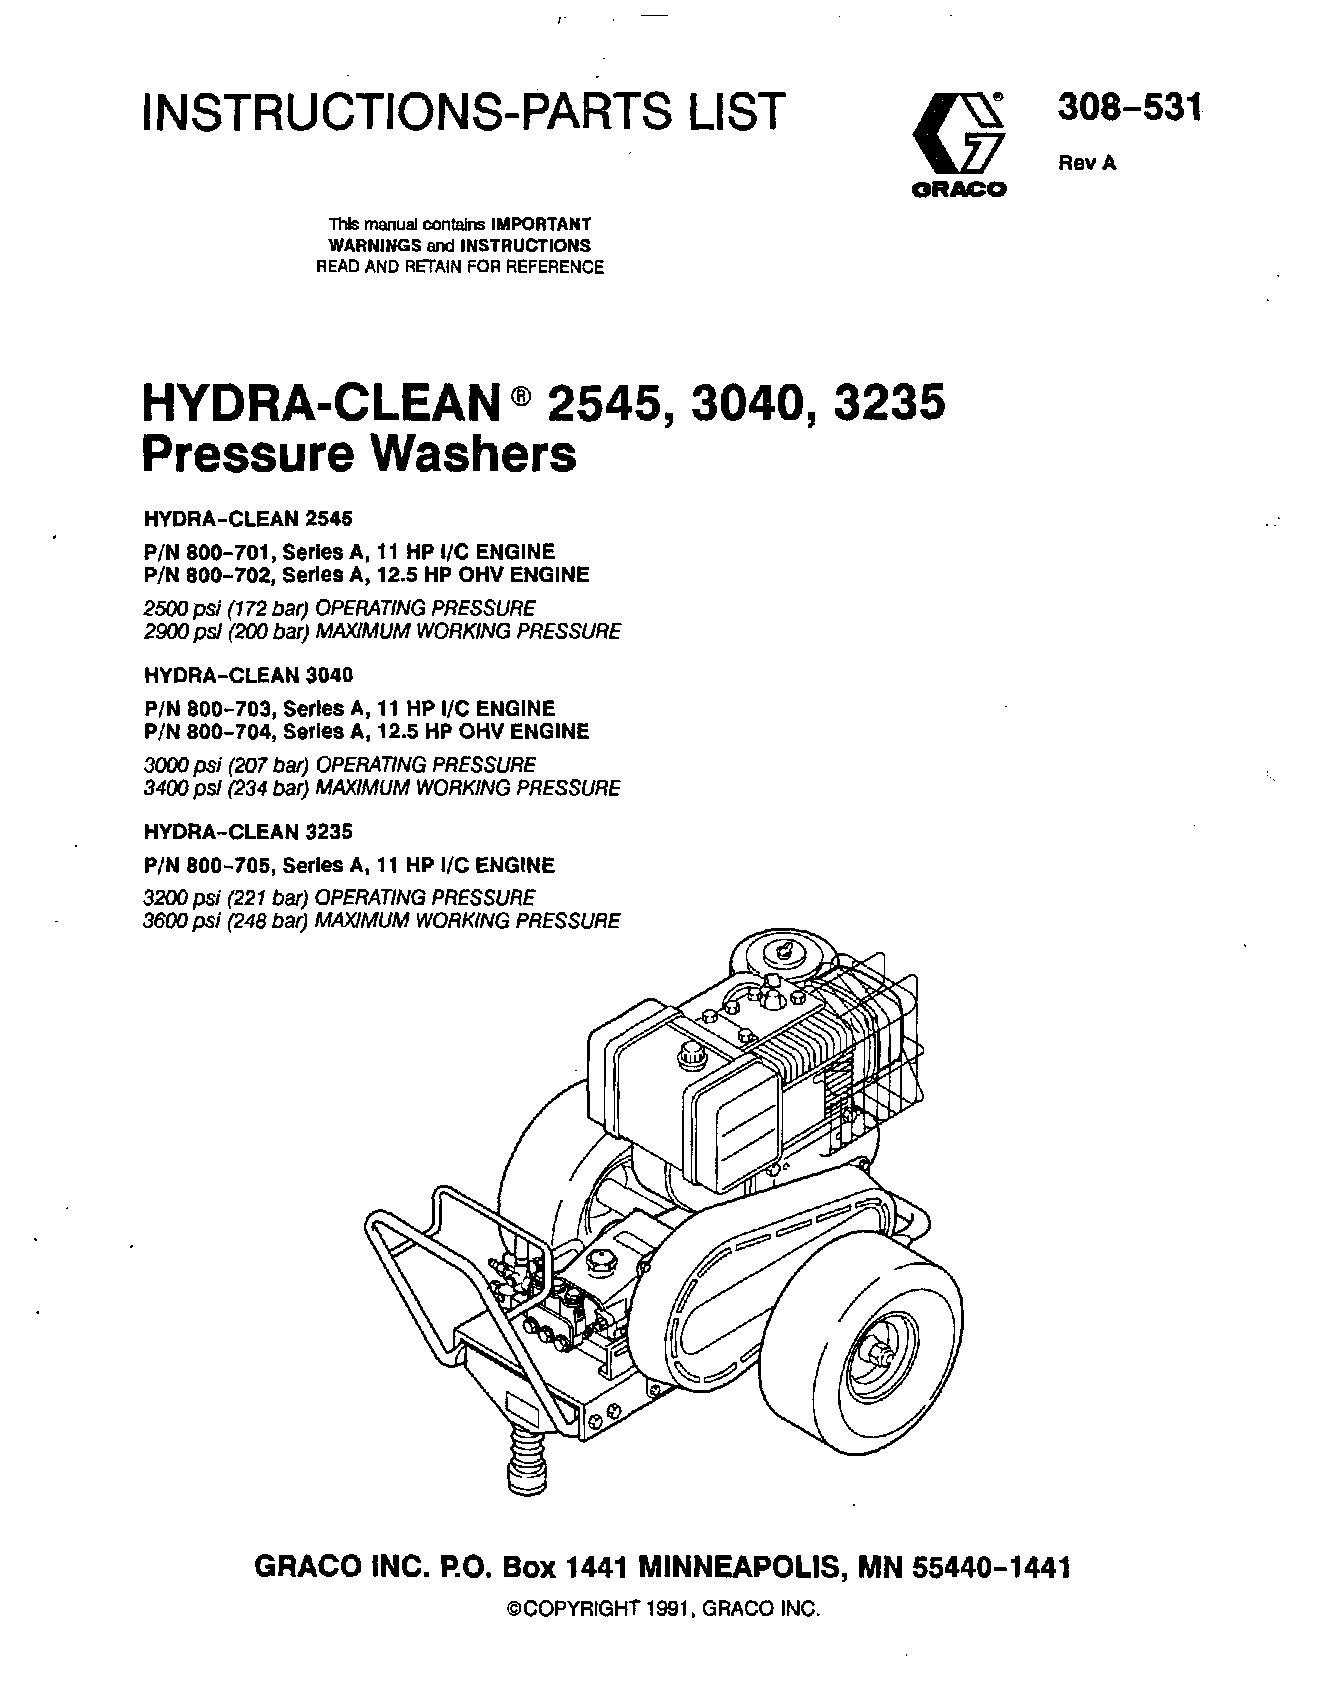 Graco Inc Hydra-Clean 800-705, Hydra-Clean 2545, Hydra-Clean 308-531, Hydra-Clean 800-703, Hydra-Clean 800-701 User Manual